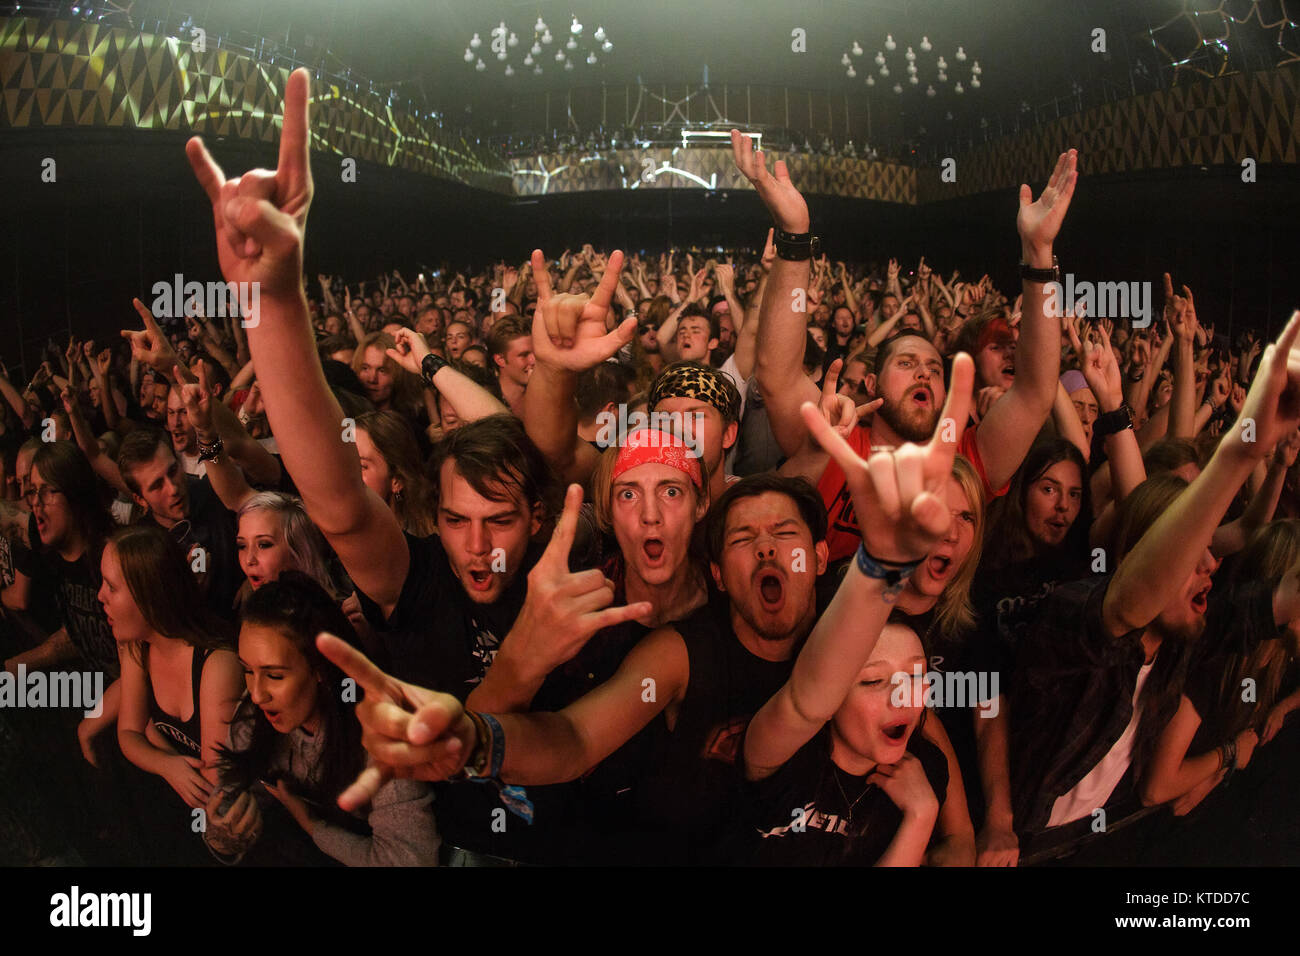 Glam rock fans ont un fantastique concert avec l'American glam et rock band comédie Steel Panther qui exécute Live VEGA à Copenhague. Le Danemark, 20/09 2016. Banque D'Images